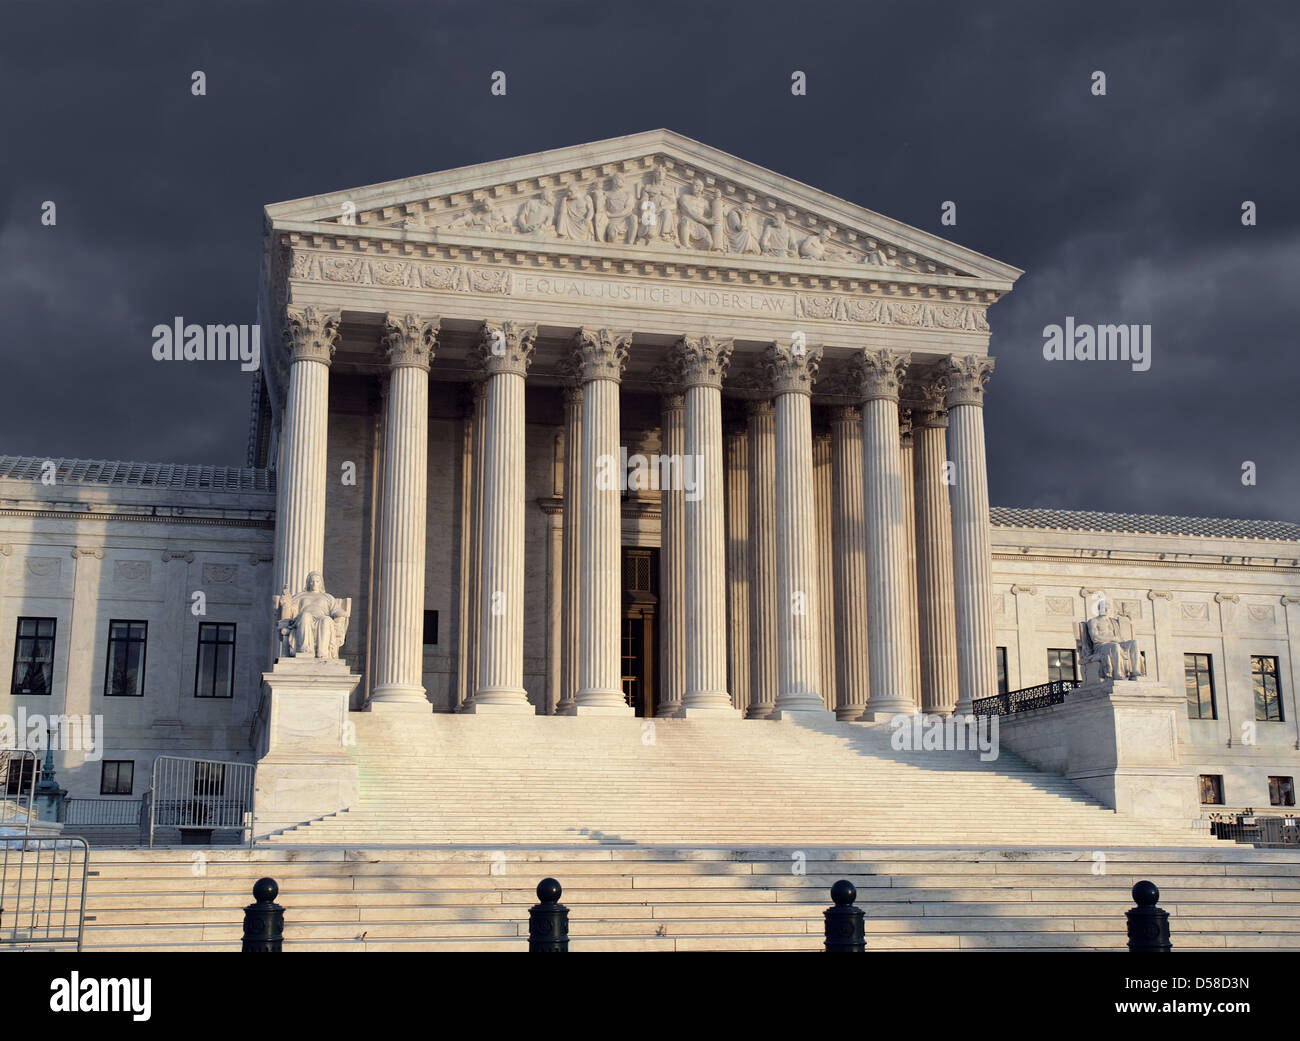 Großer Auftritt des United States Supreme Court in warmes Licht am Nachmittag. Stockfoto